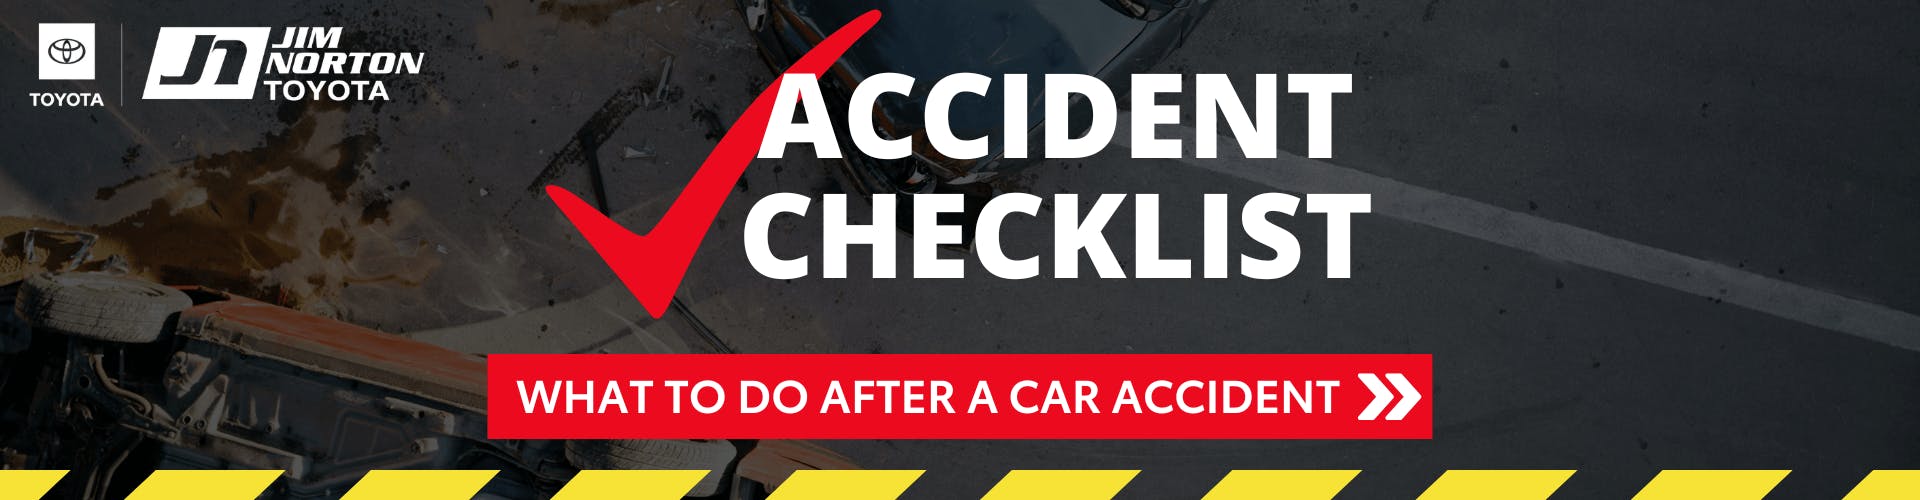 Accident Checklist